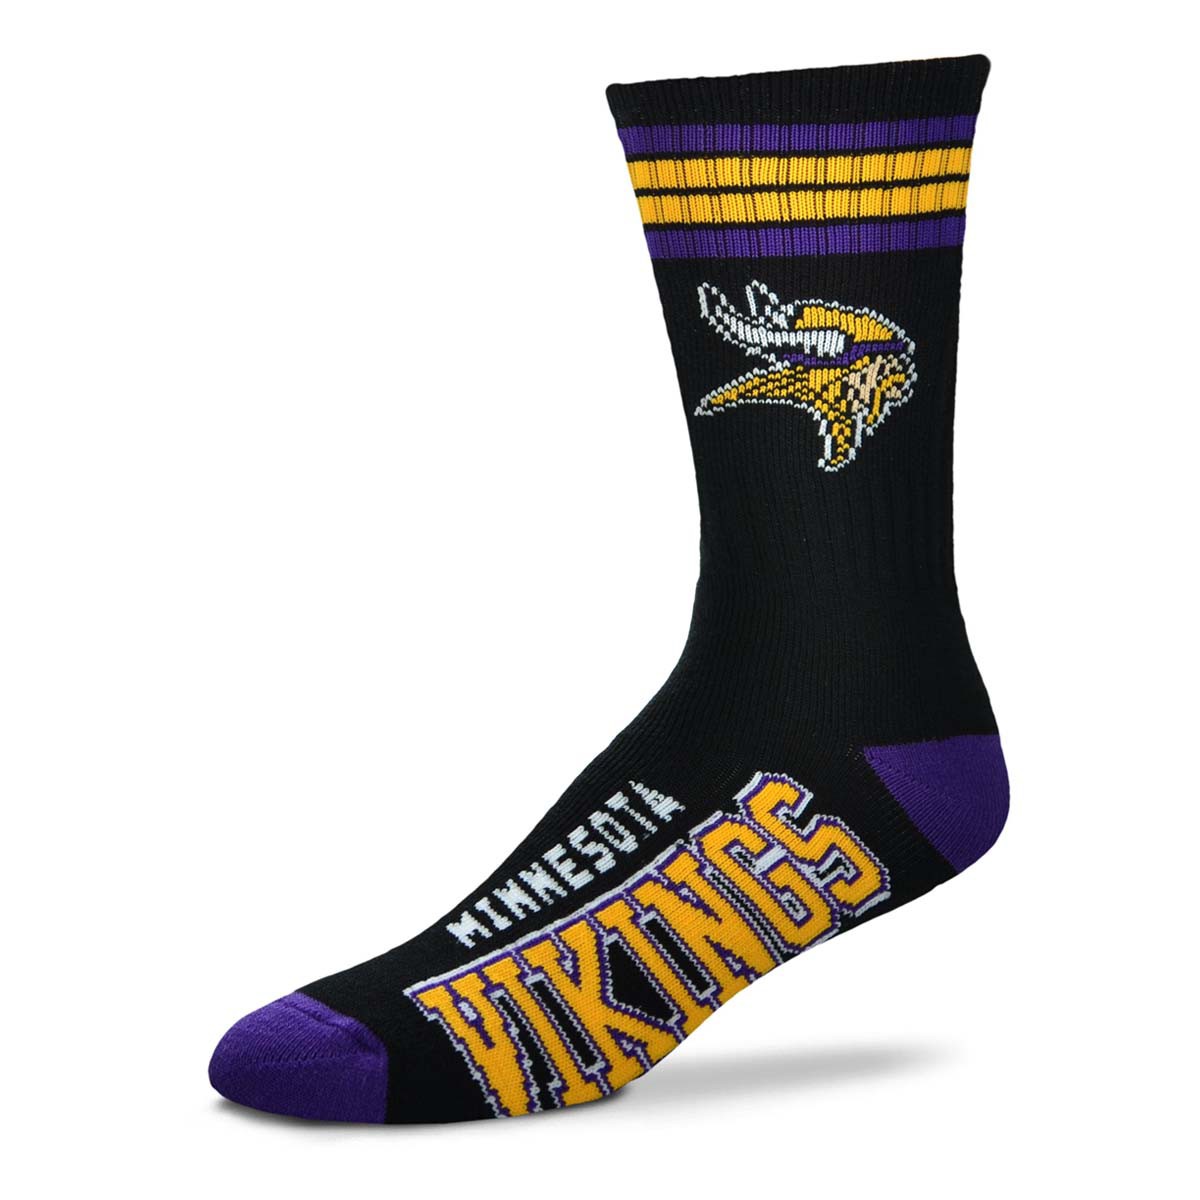 Minnesota Vikings Men's 4 Stripe Alternate Deuce Socks - Dynasty Sports & Framing 